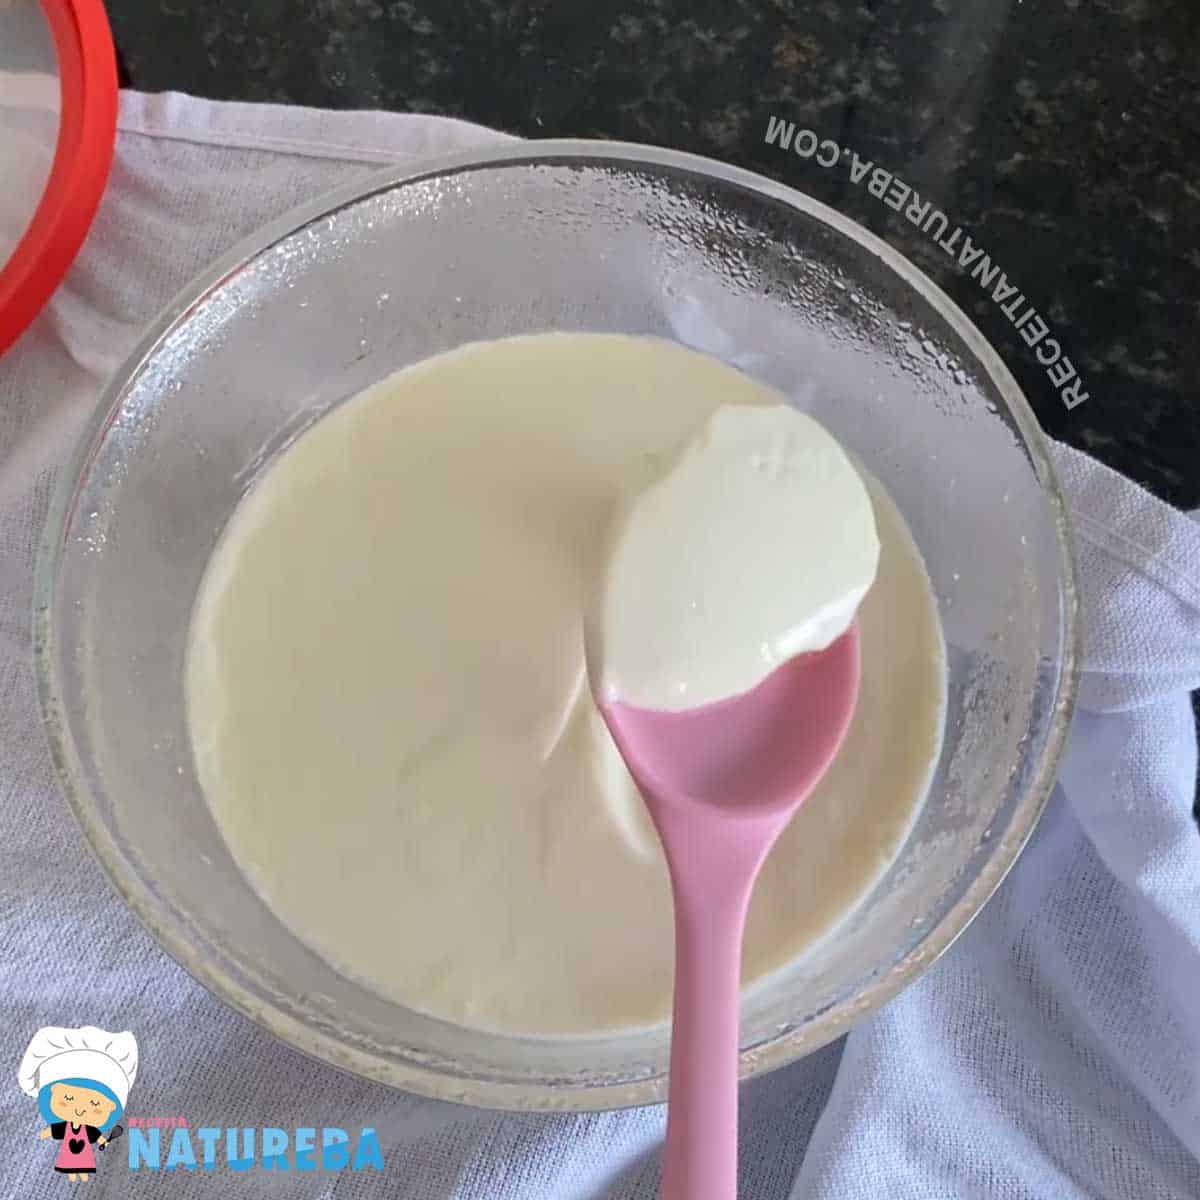 consistencia do iogurte apos fermentar e resfriar